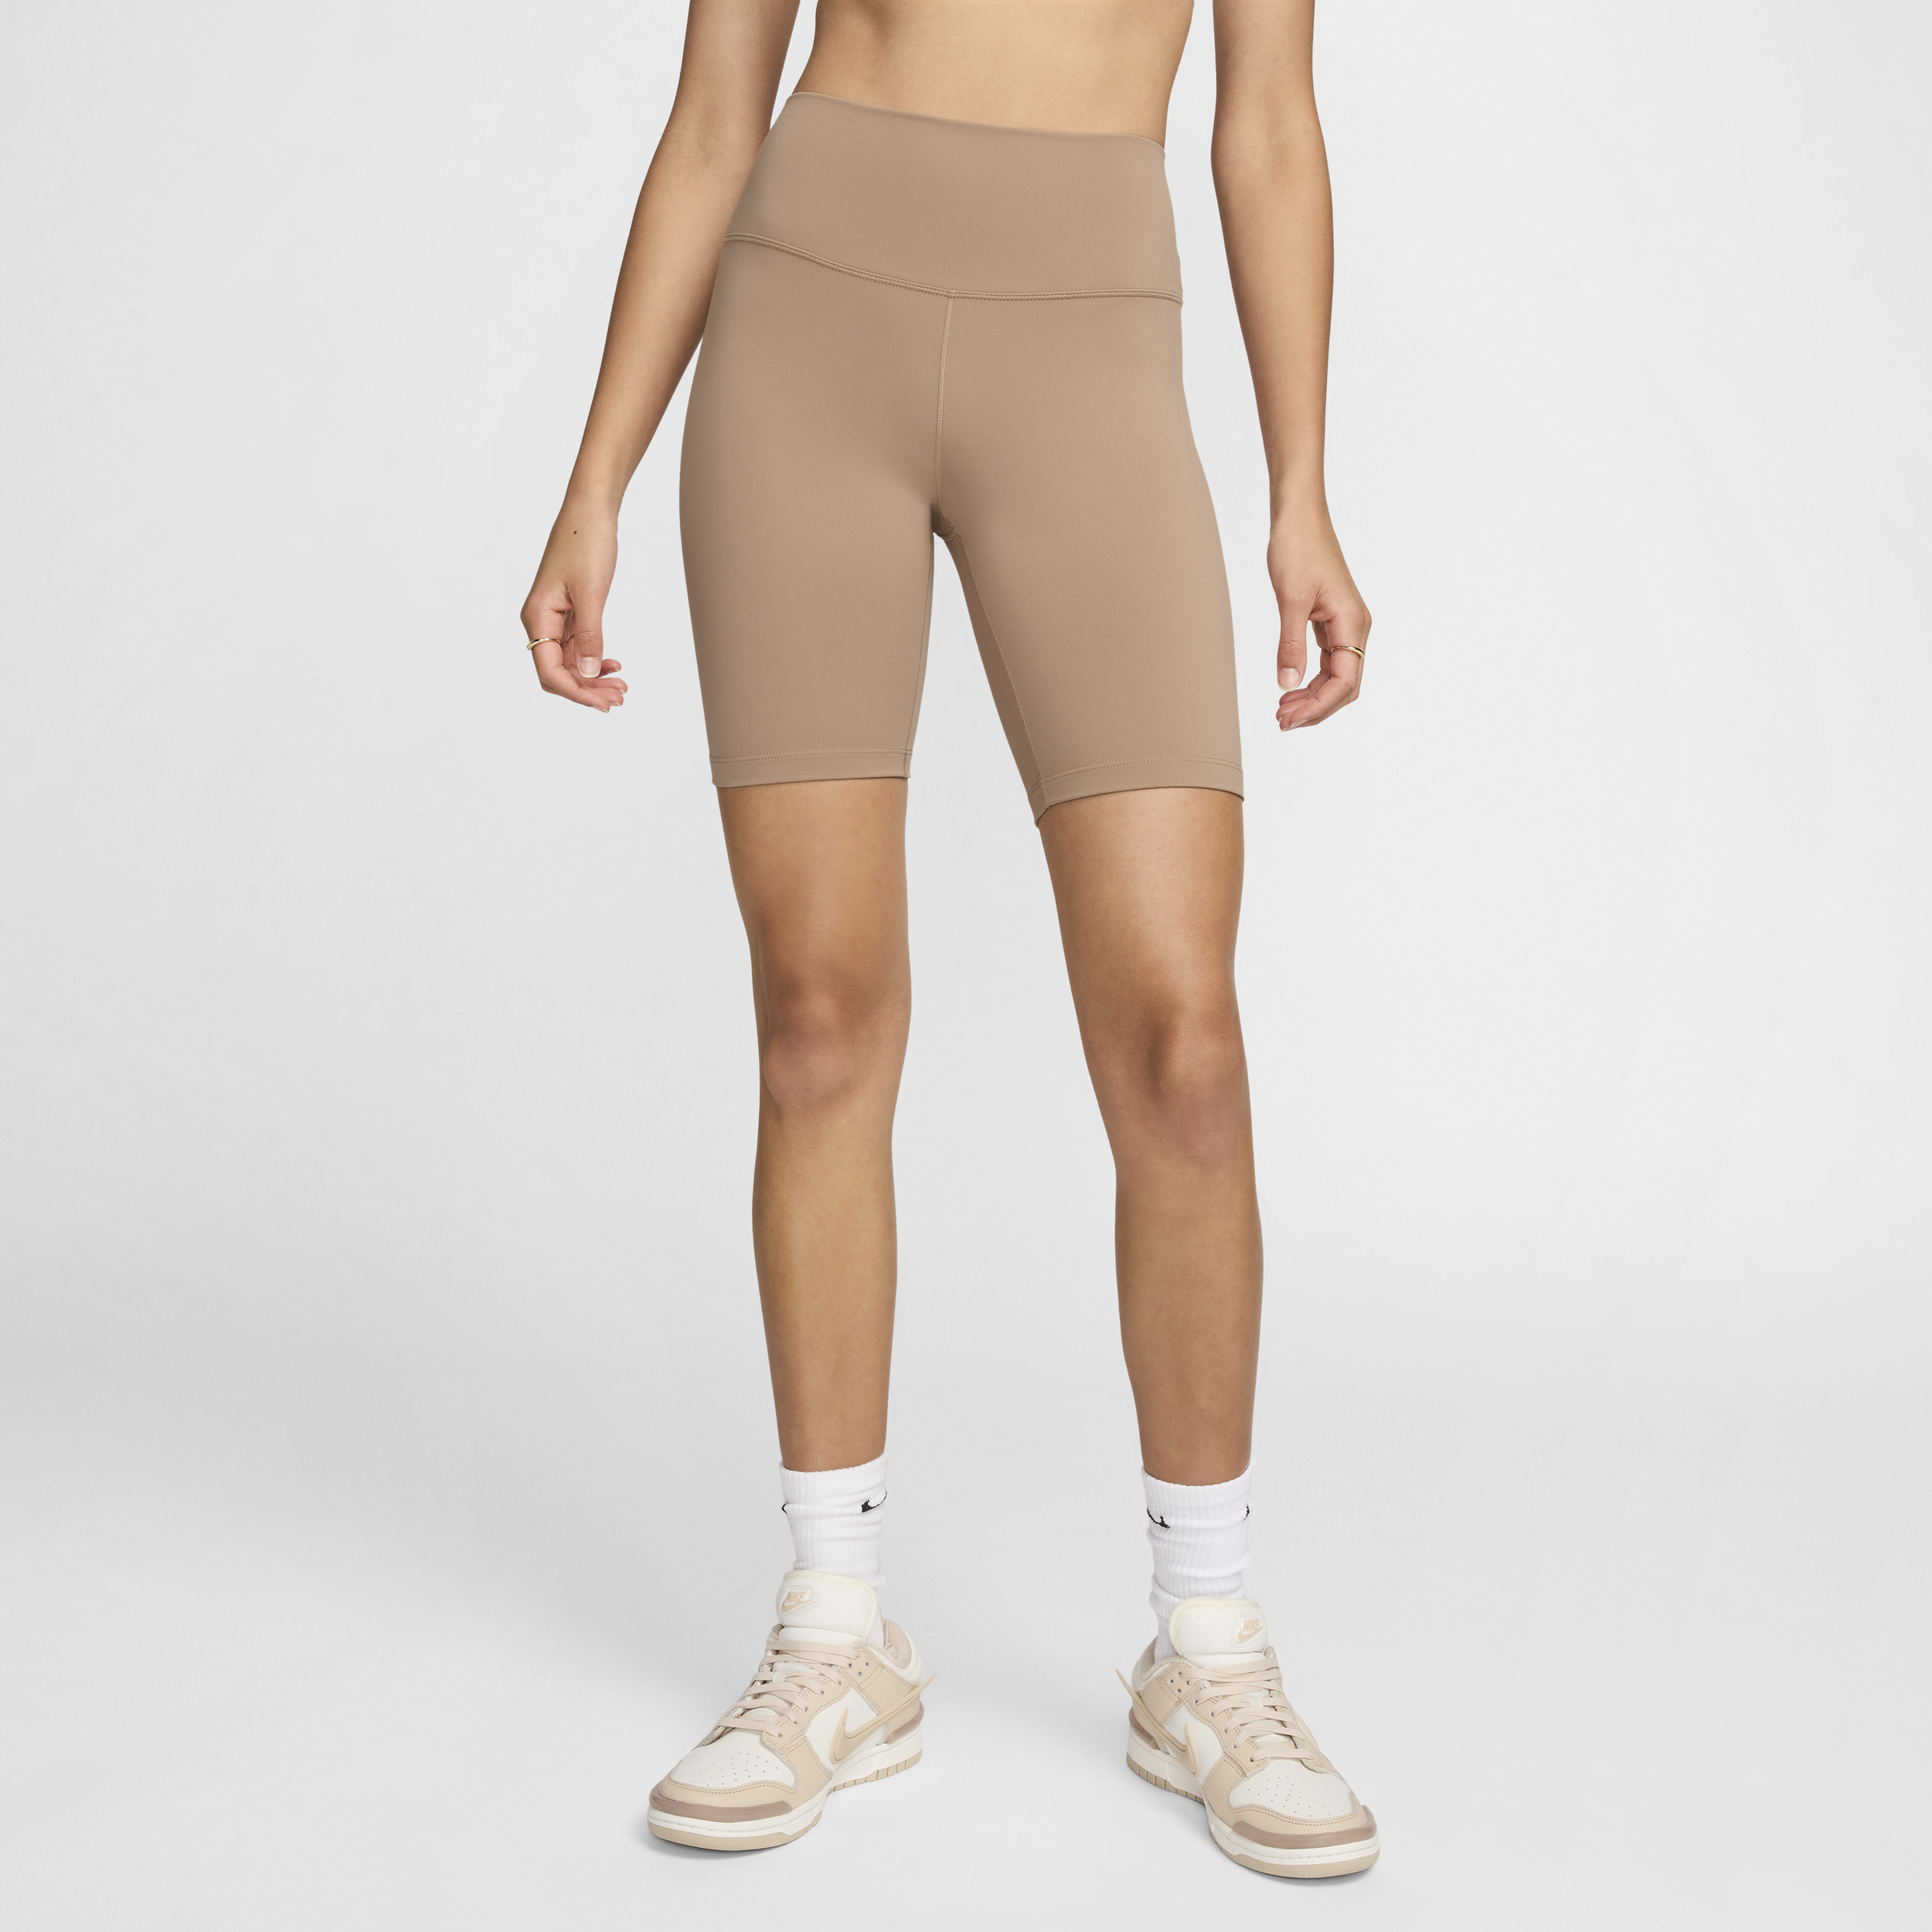 Nike One Mallas cortas de 20 cm y talle alto - Mujer - Marrón